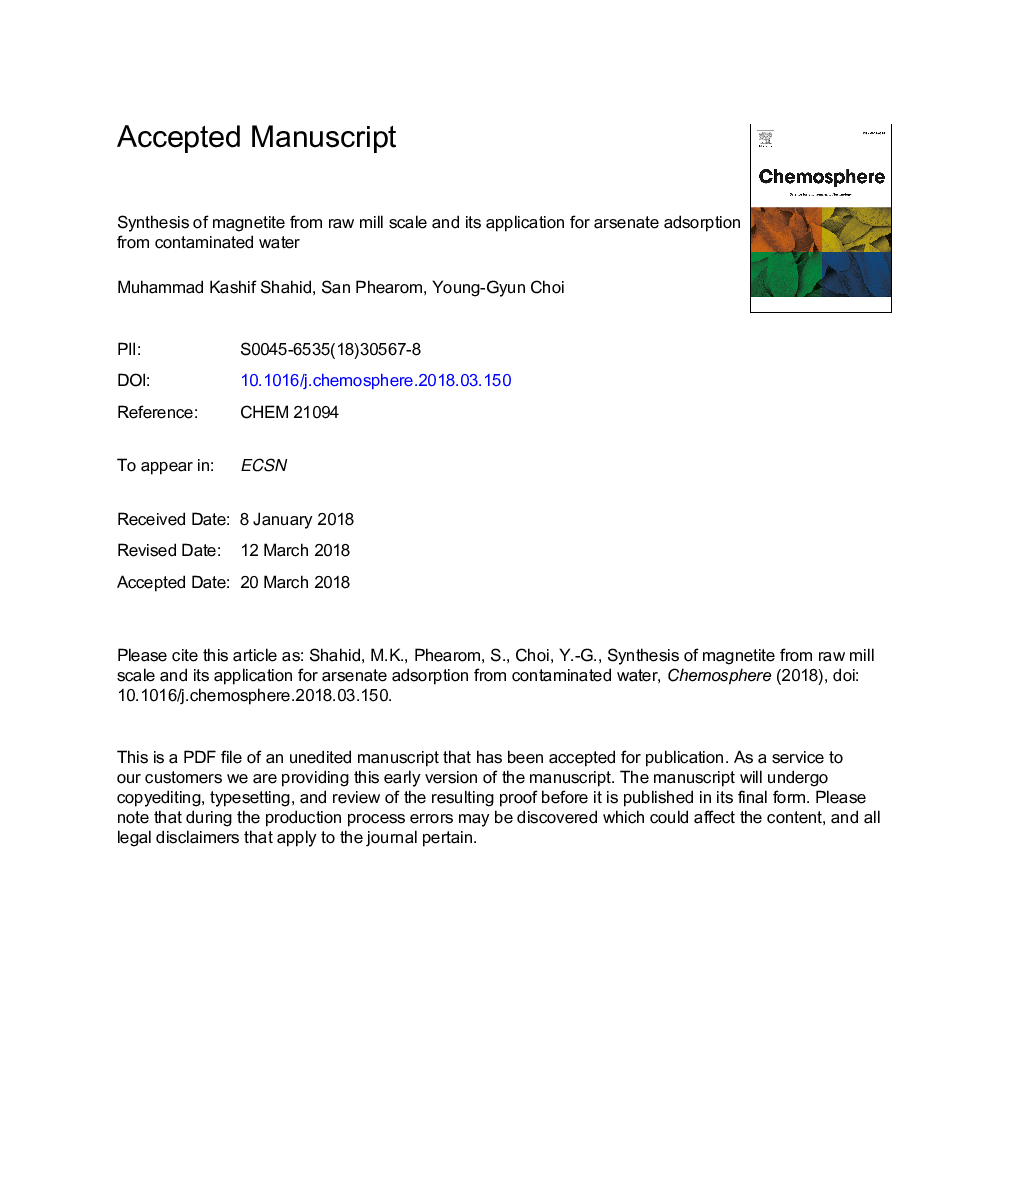 سنتز مگنتیت از مقیاس آسیاب خام و کاربرد آن برای جذب آرسنیک از آب آلوده 